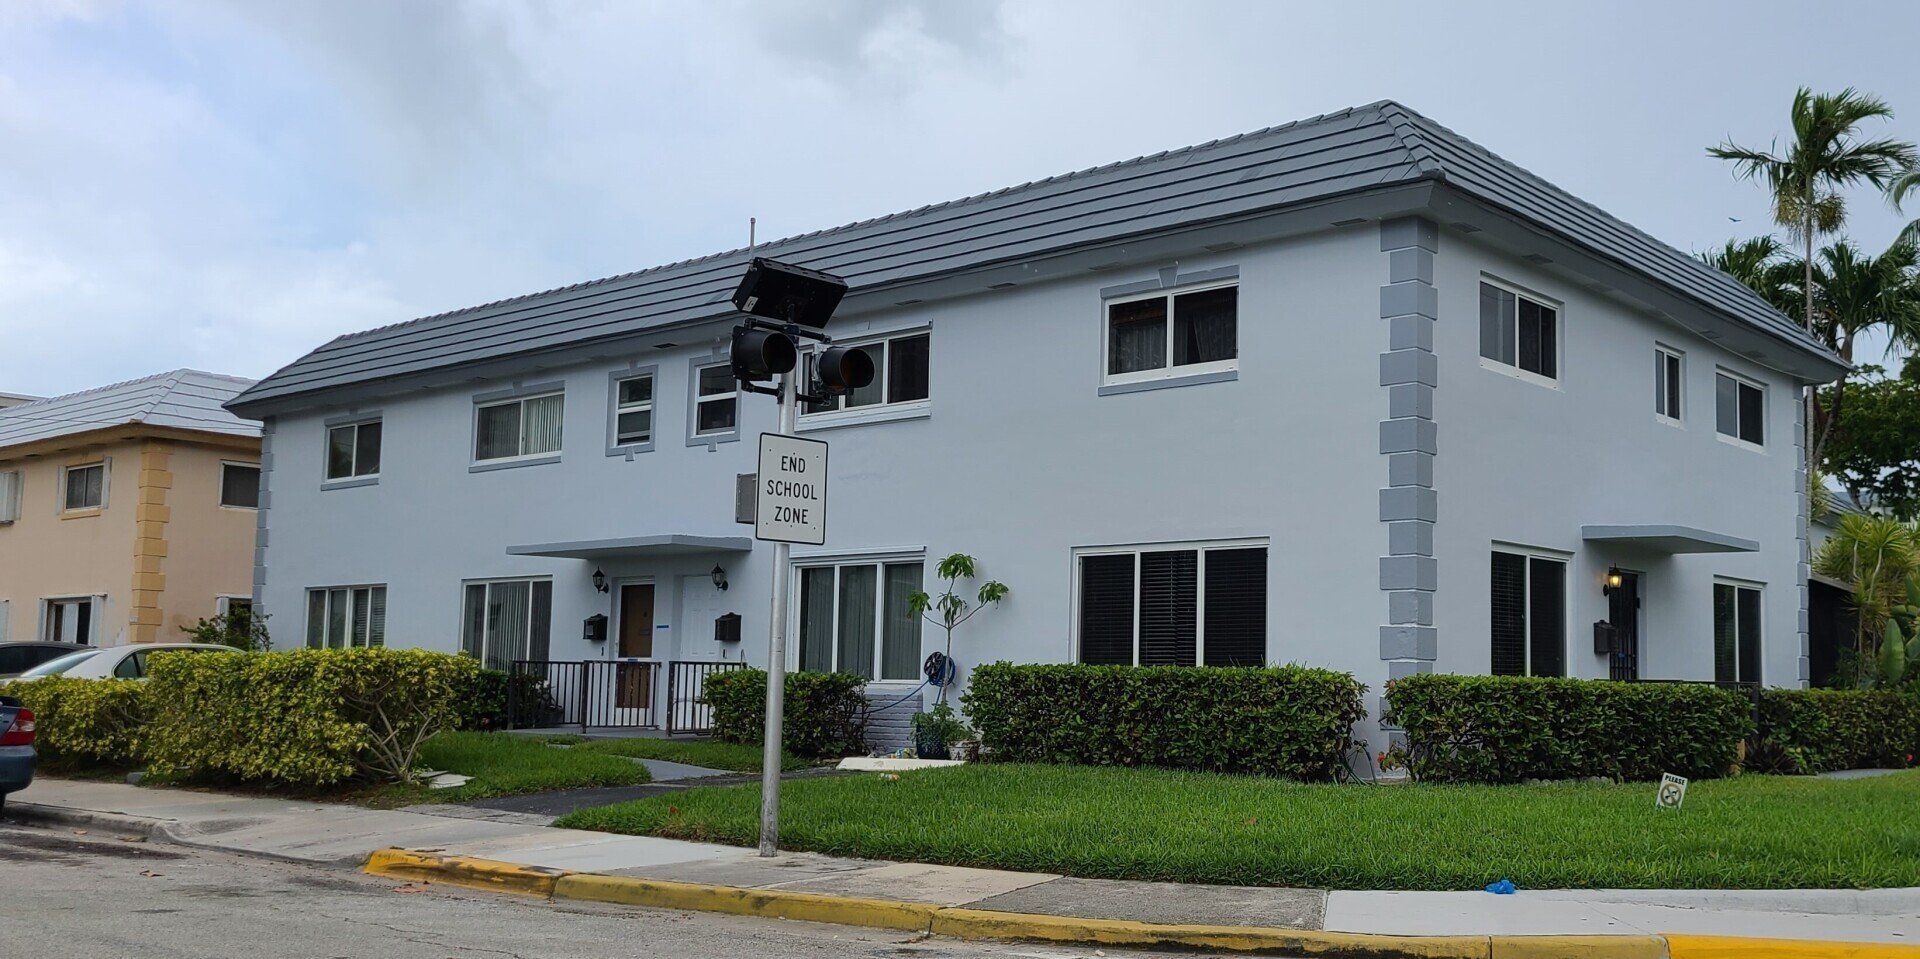 Exterior condominium building - Commercial painting in Miami,FL